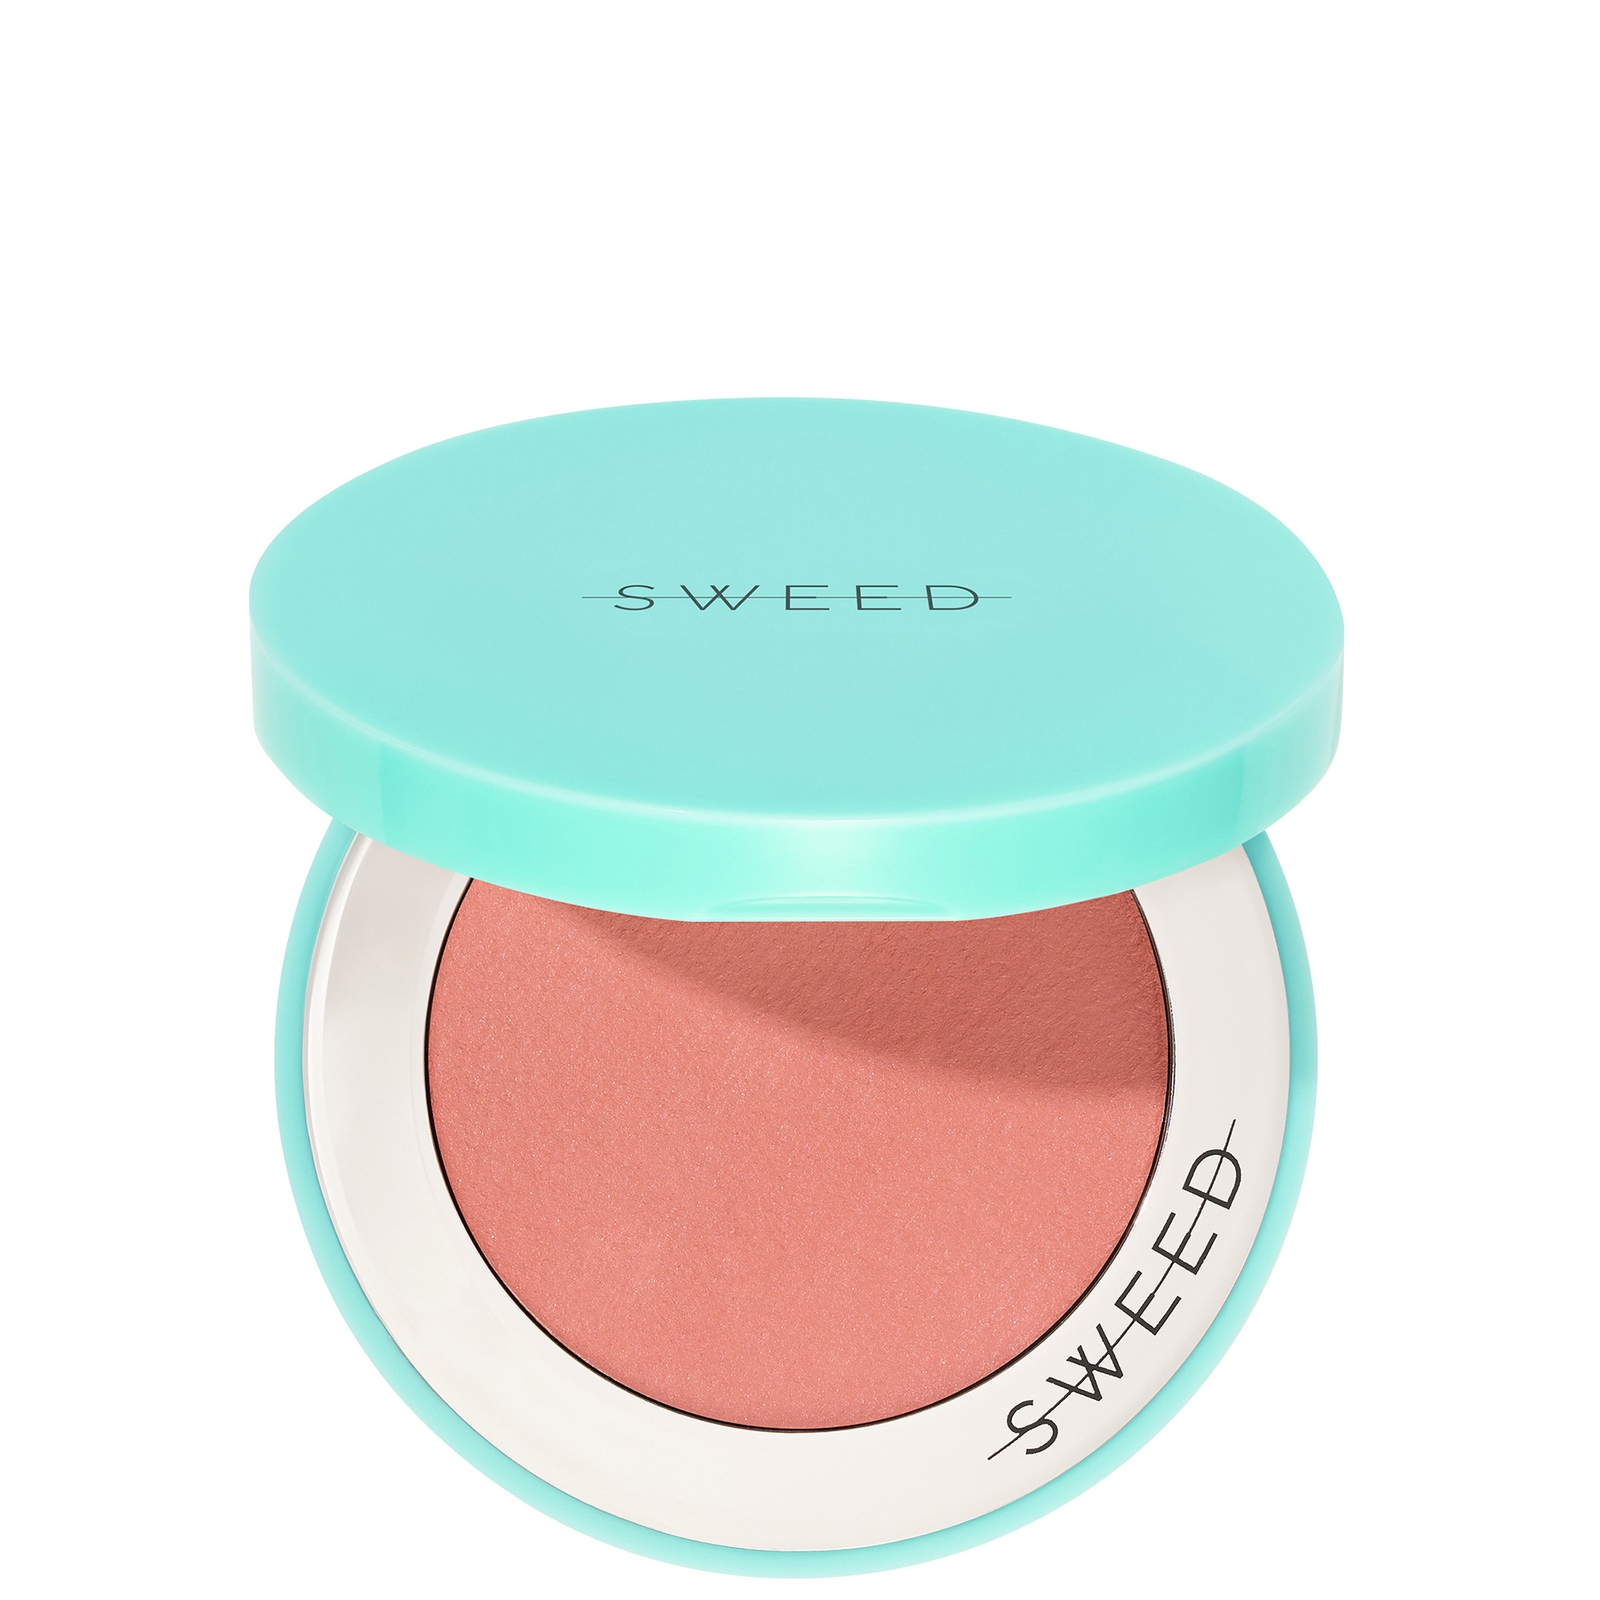 Sweed Air Blush Cream 5g (Various Shades) - Suntouch